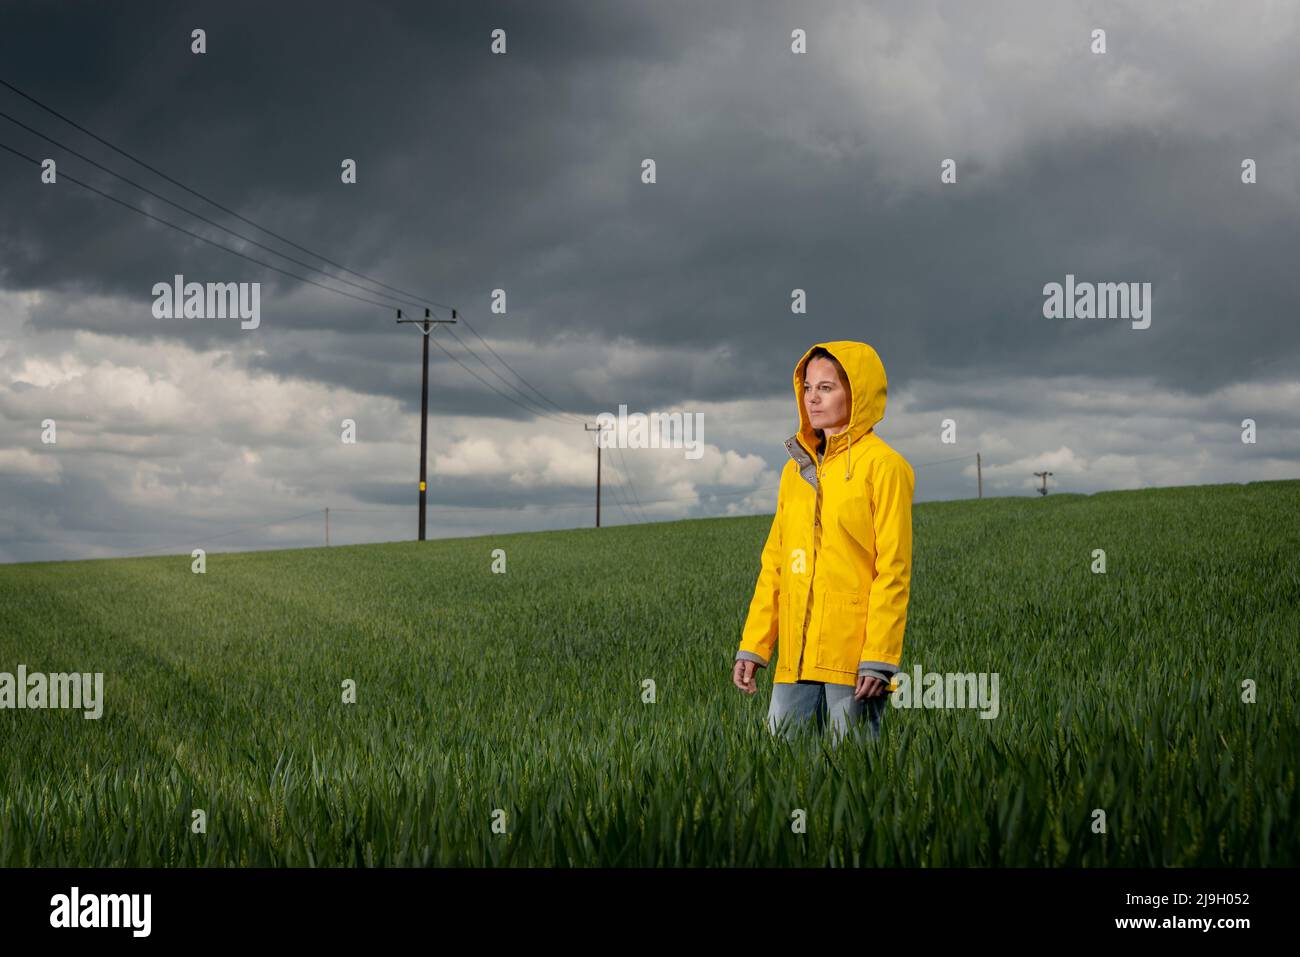 Frau trägt einen gelben Mantel in einem grünen Feld mit einem stürmischen Himmel Hintergrund. Stockfoto